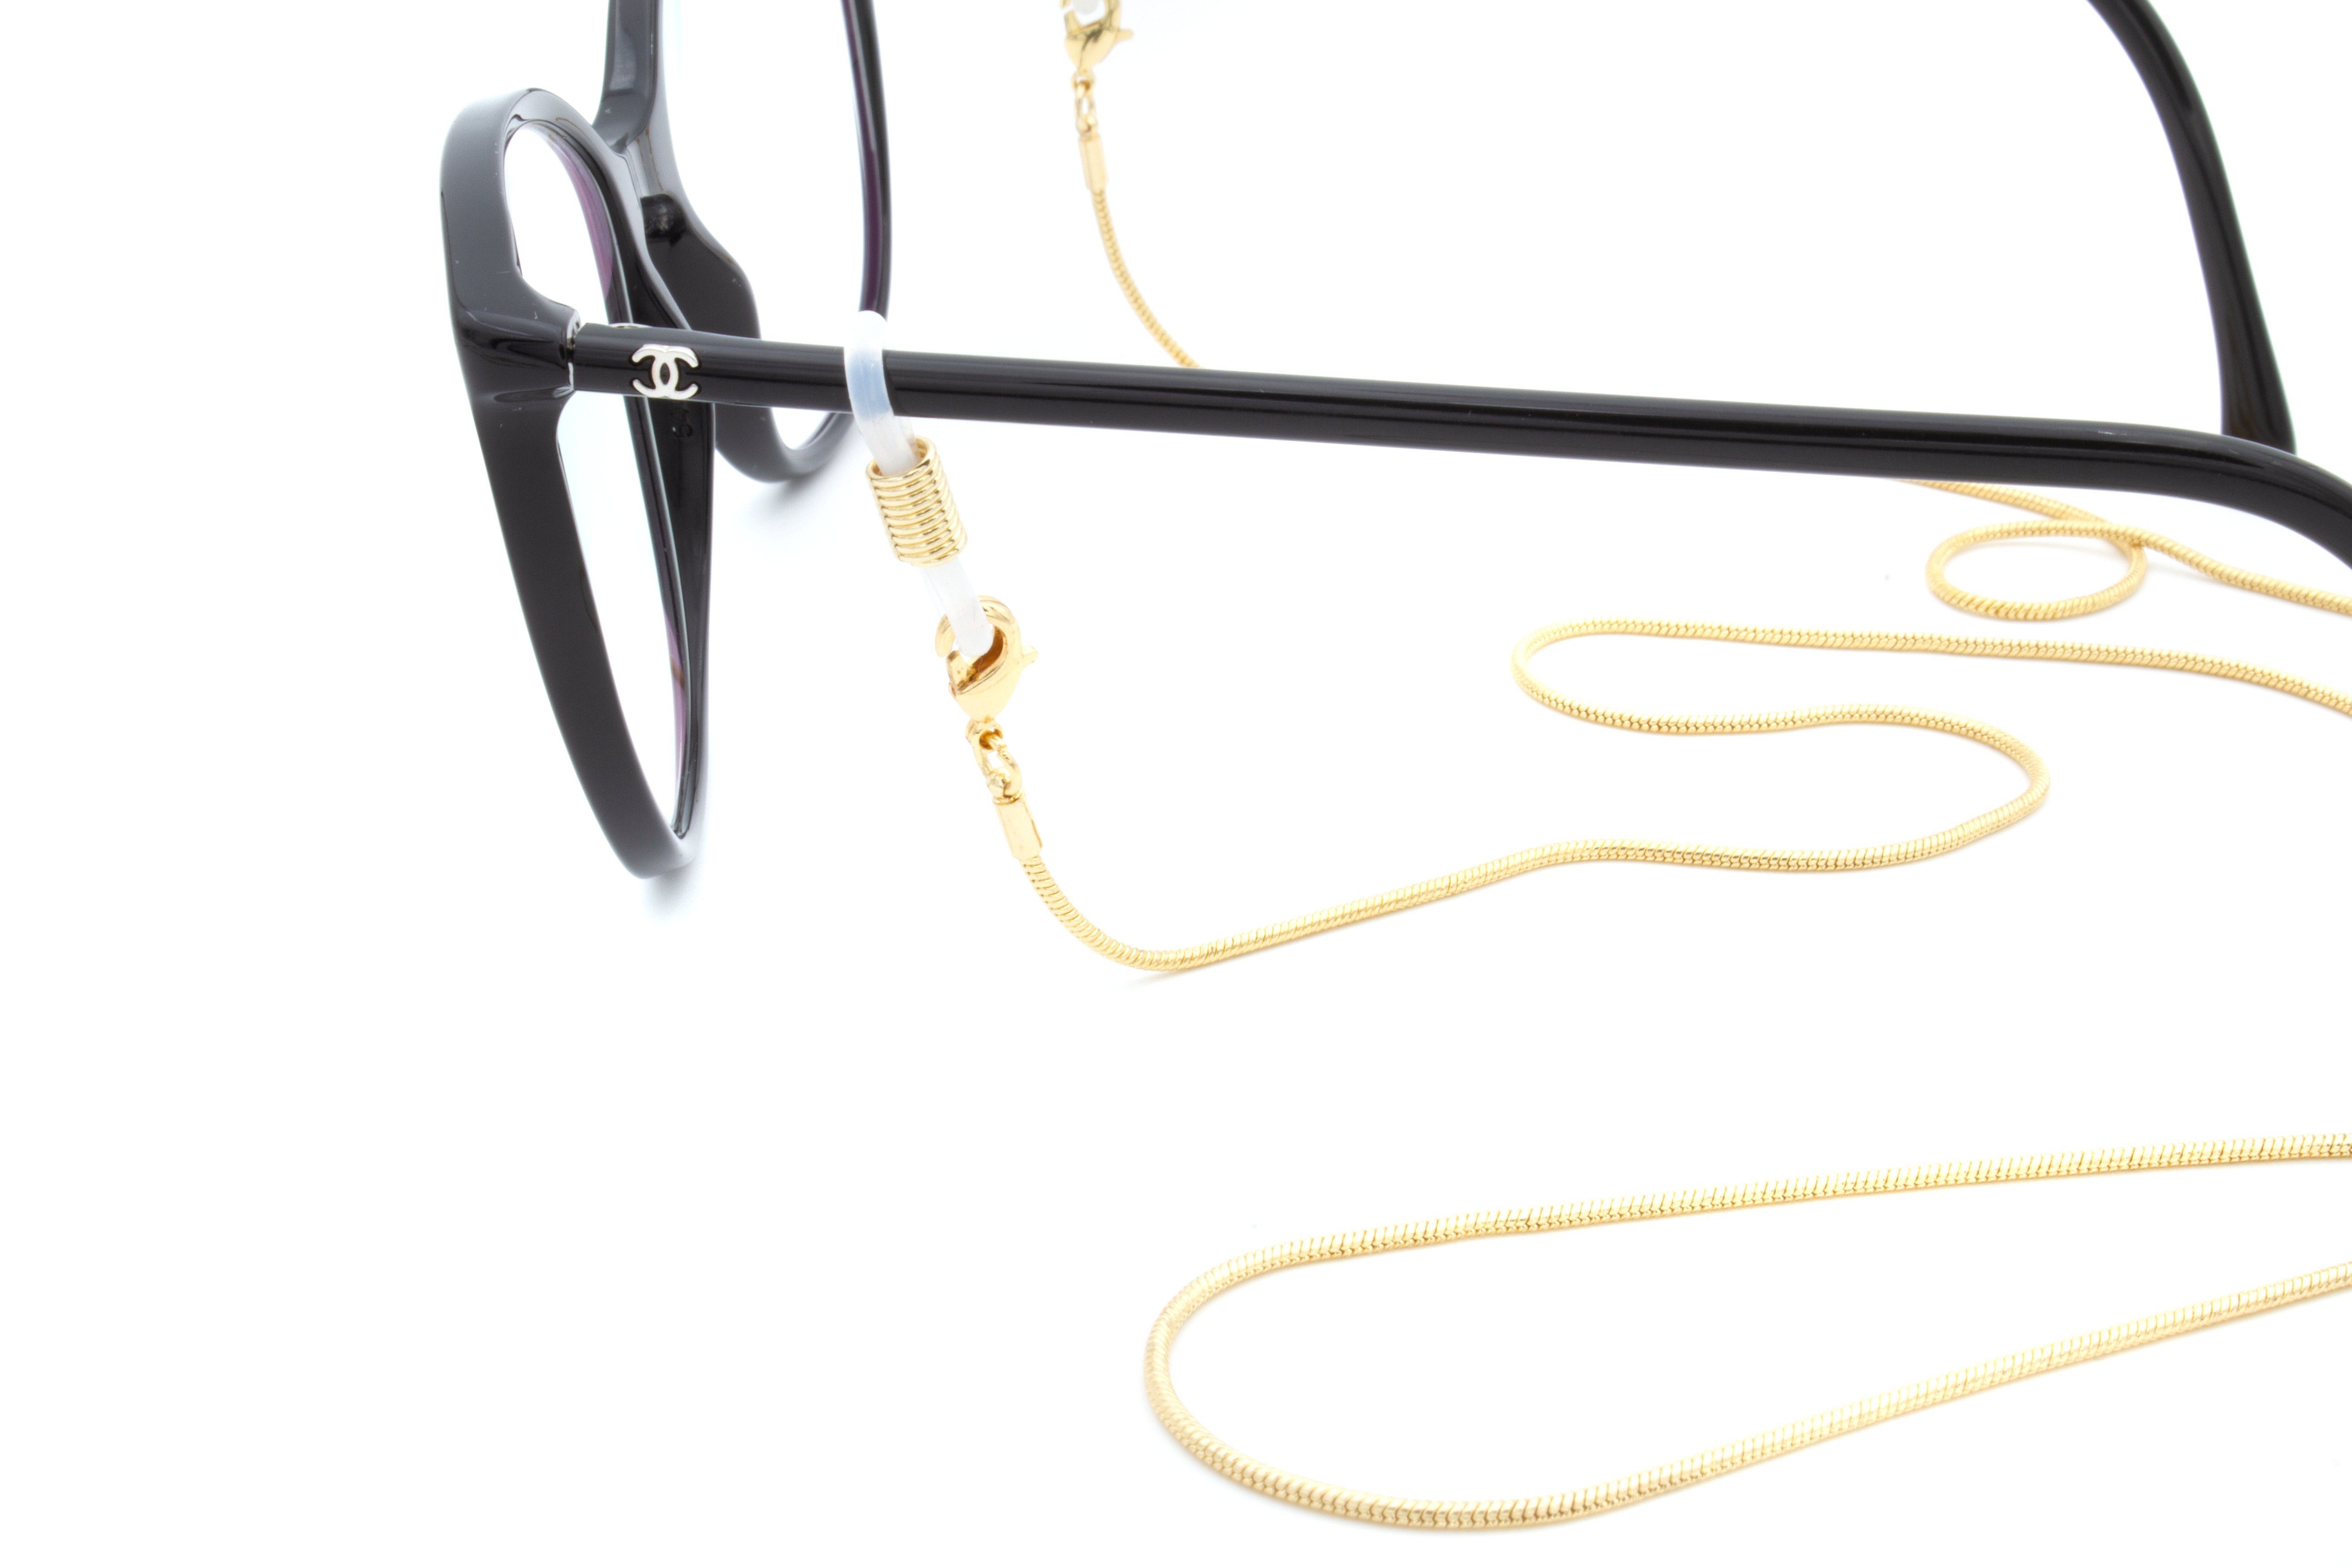 925er Versiegelung DAS - Amalfi 18 - Gold - feingliedrig, - Silber, ORIGINAL korrosionsbeständig Karat Brillenkette oder aus verfärbt nicht GERNEO® GERNEO